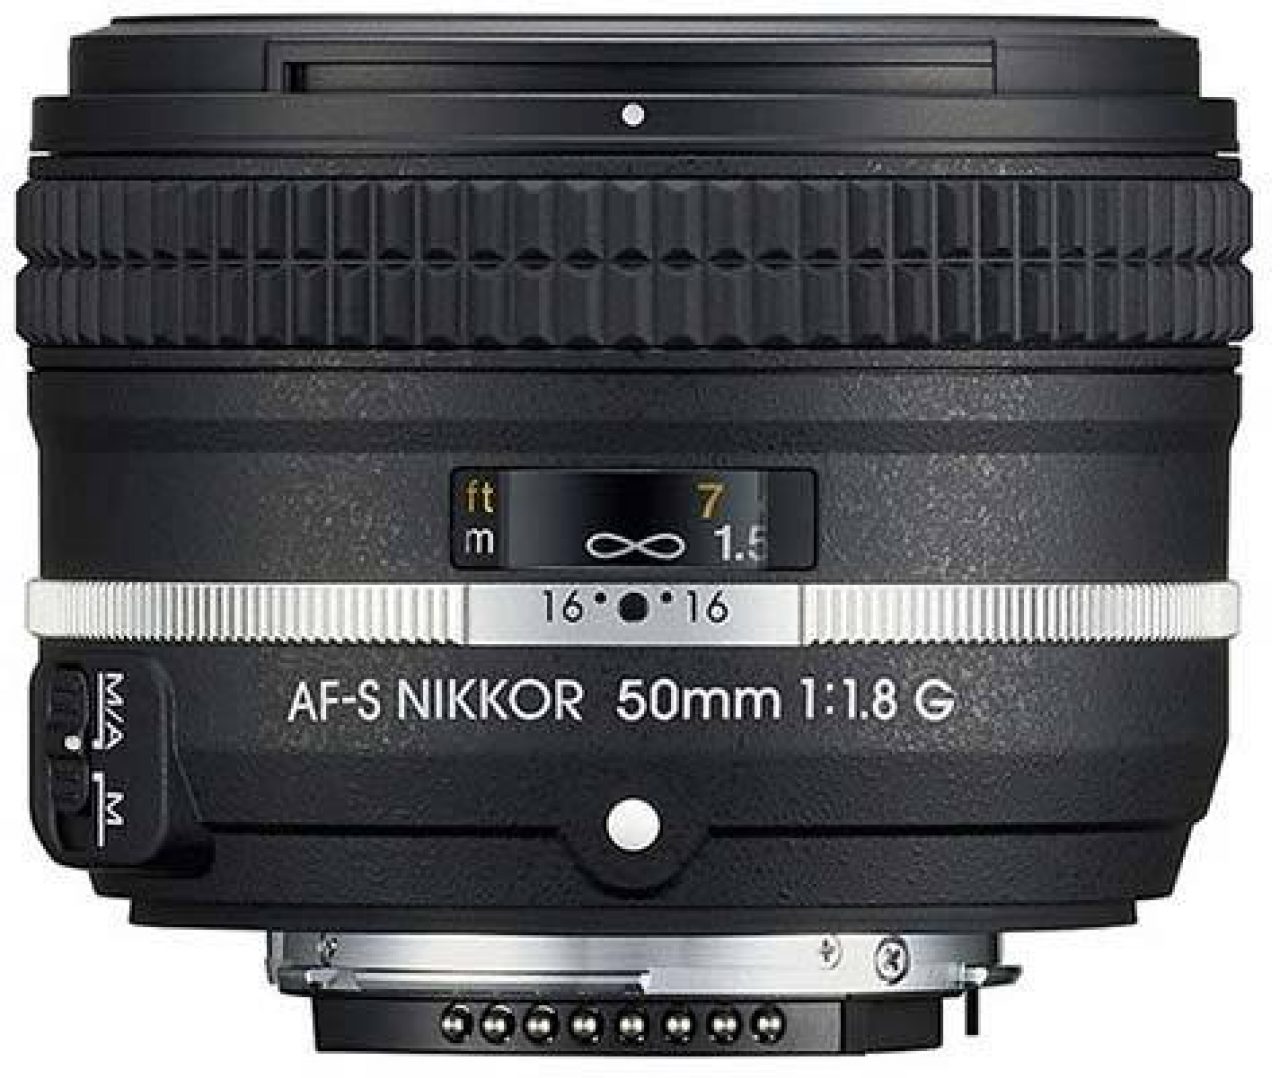 Nikon AF-S Nikkor 50mm f/1.8G (Special Edition) Review ...